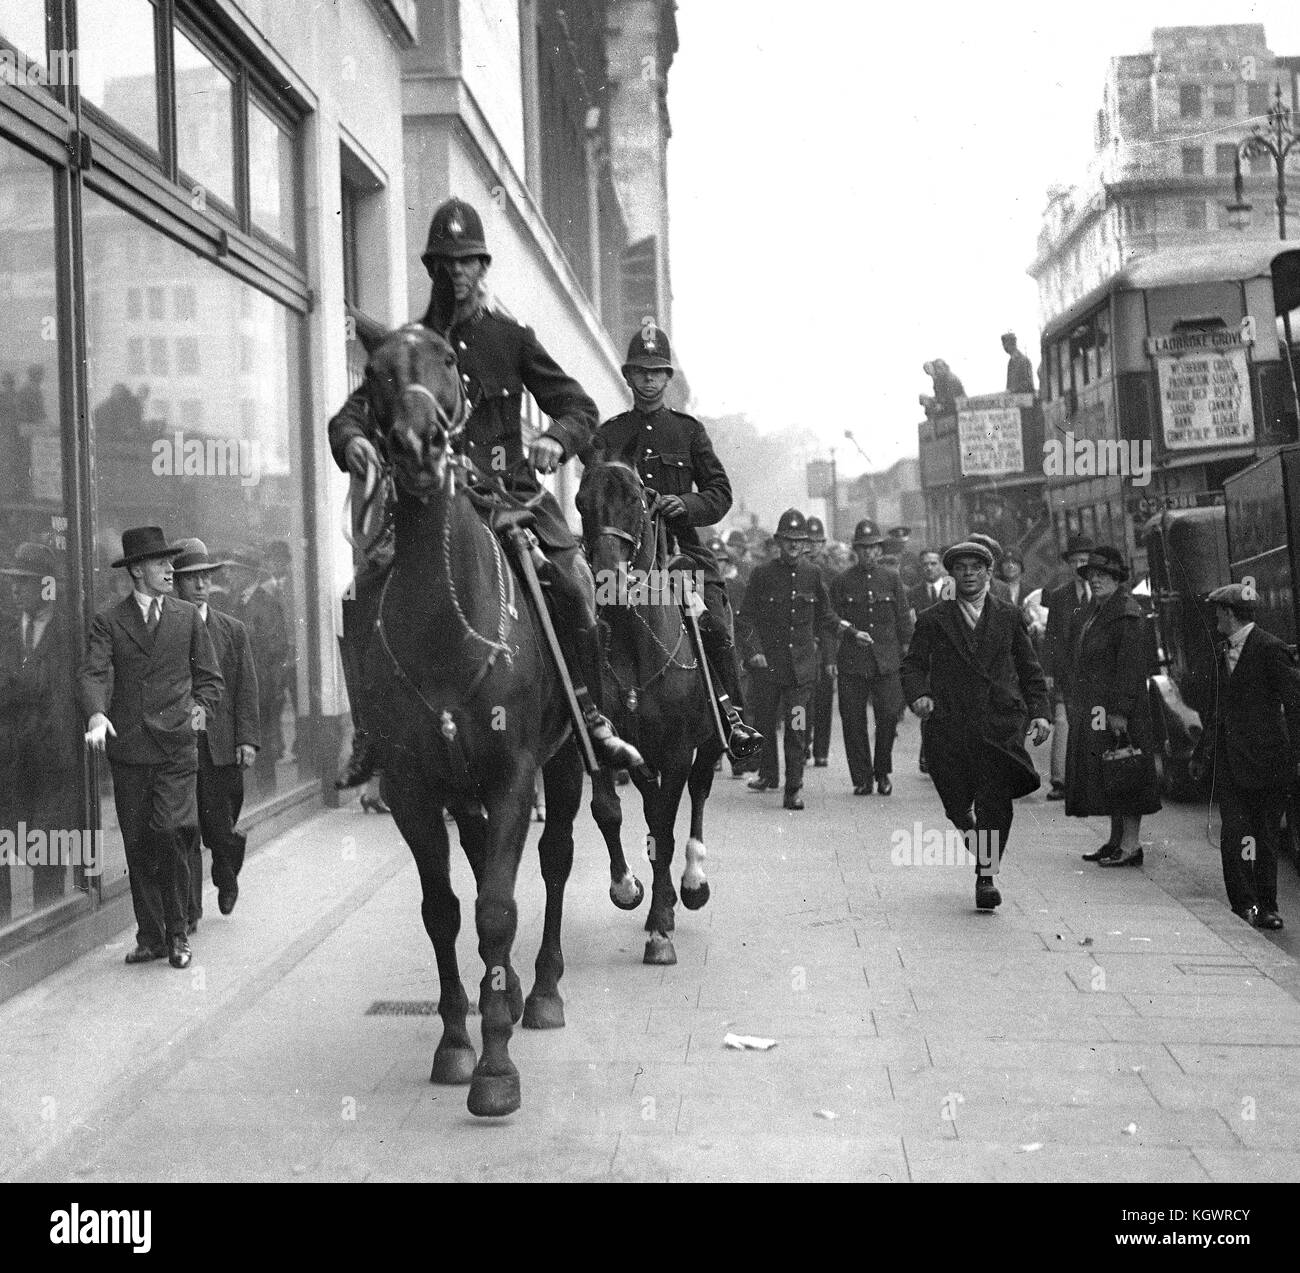 Les agents de police à cheval sur la chaussée pendant les chômeurs d'émeutes à Londres pendant la crise de septembre 1931 Banque D'Images